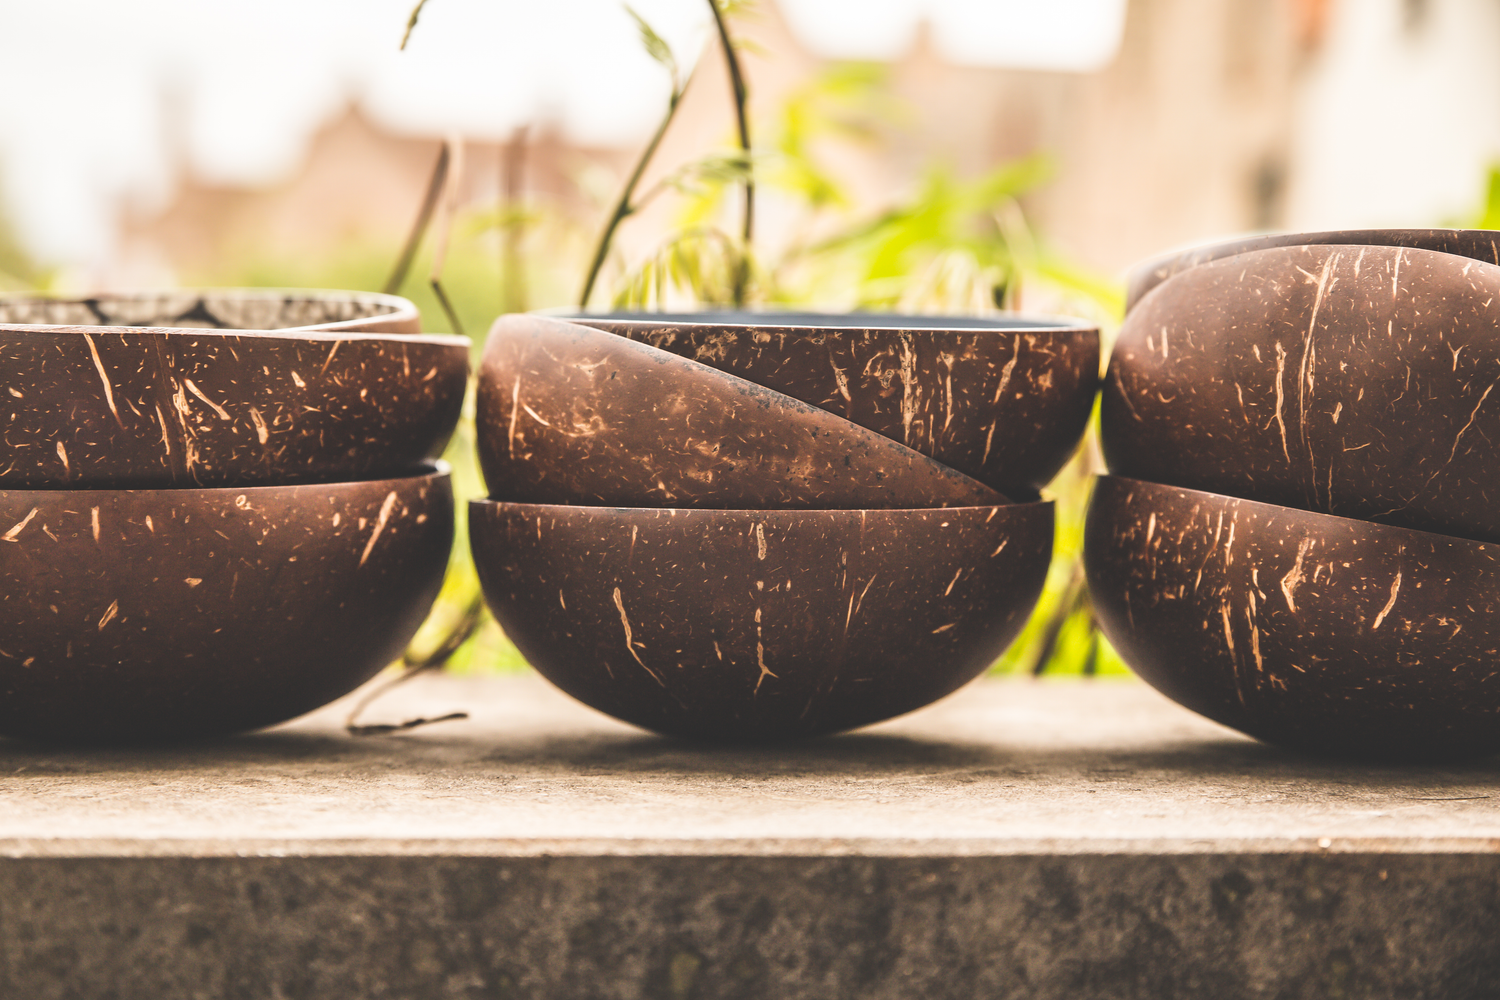 Coconut bowl sets